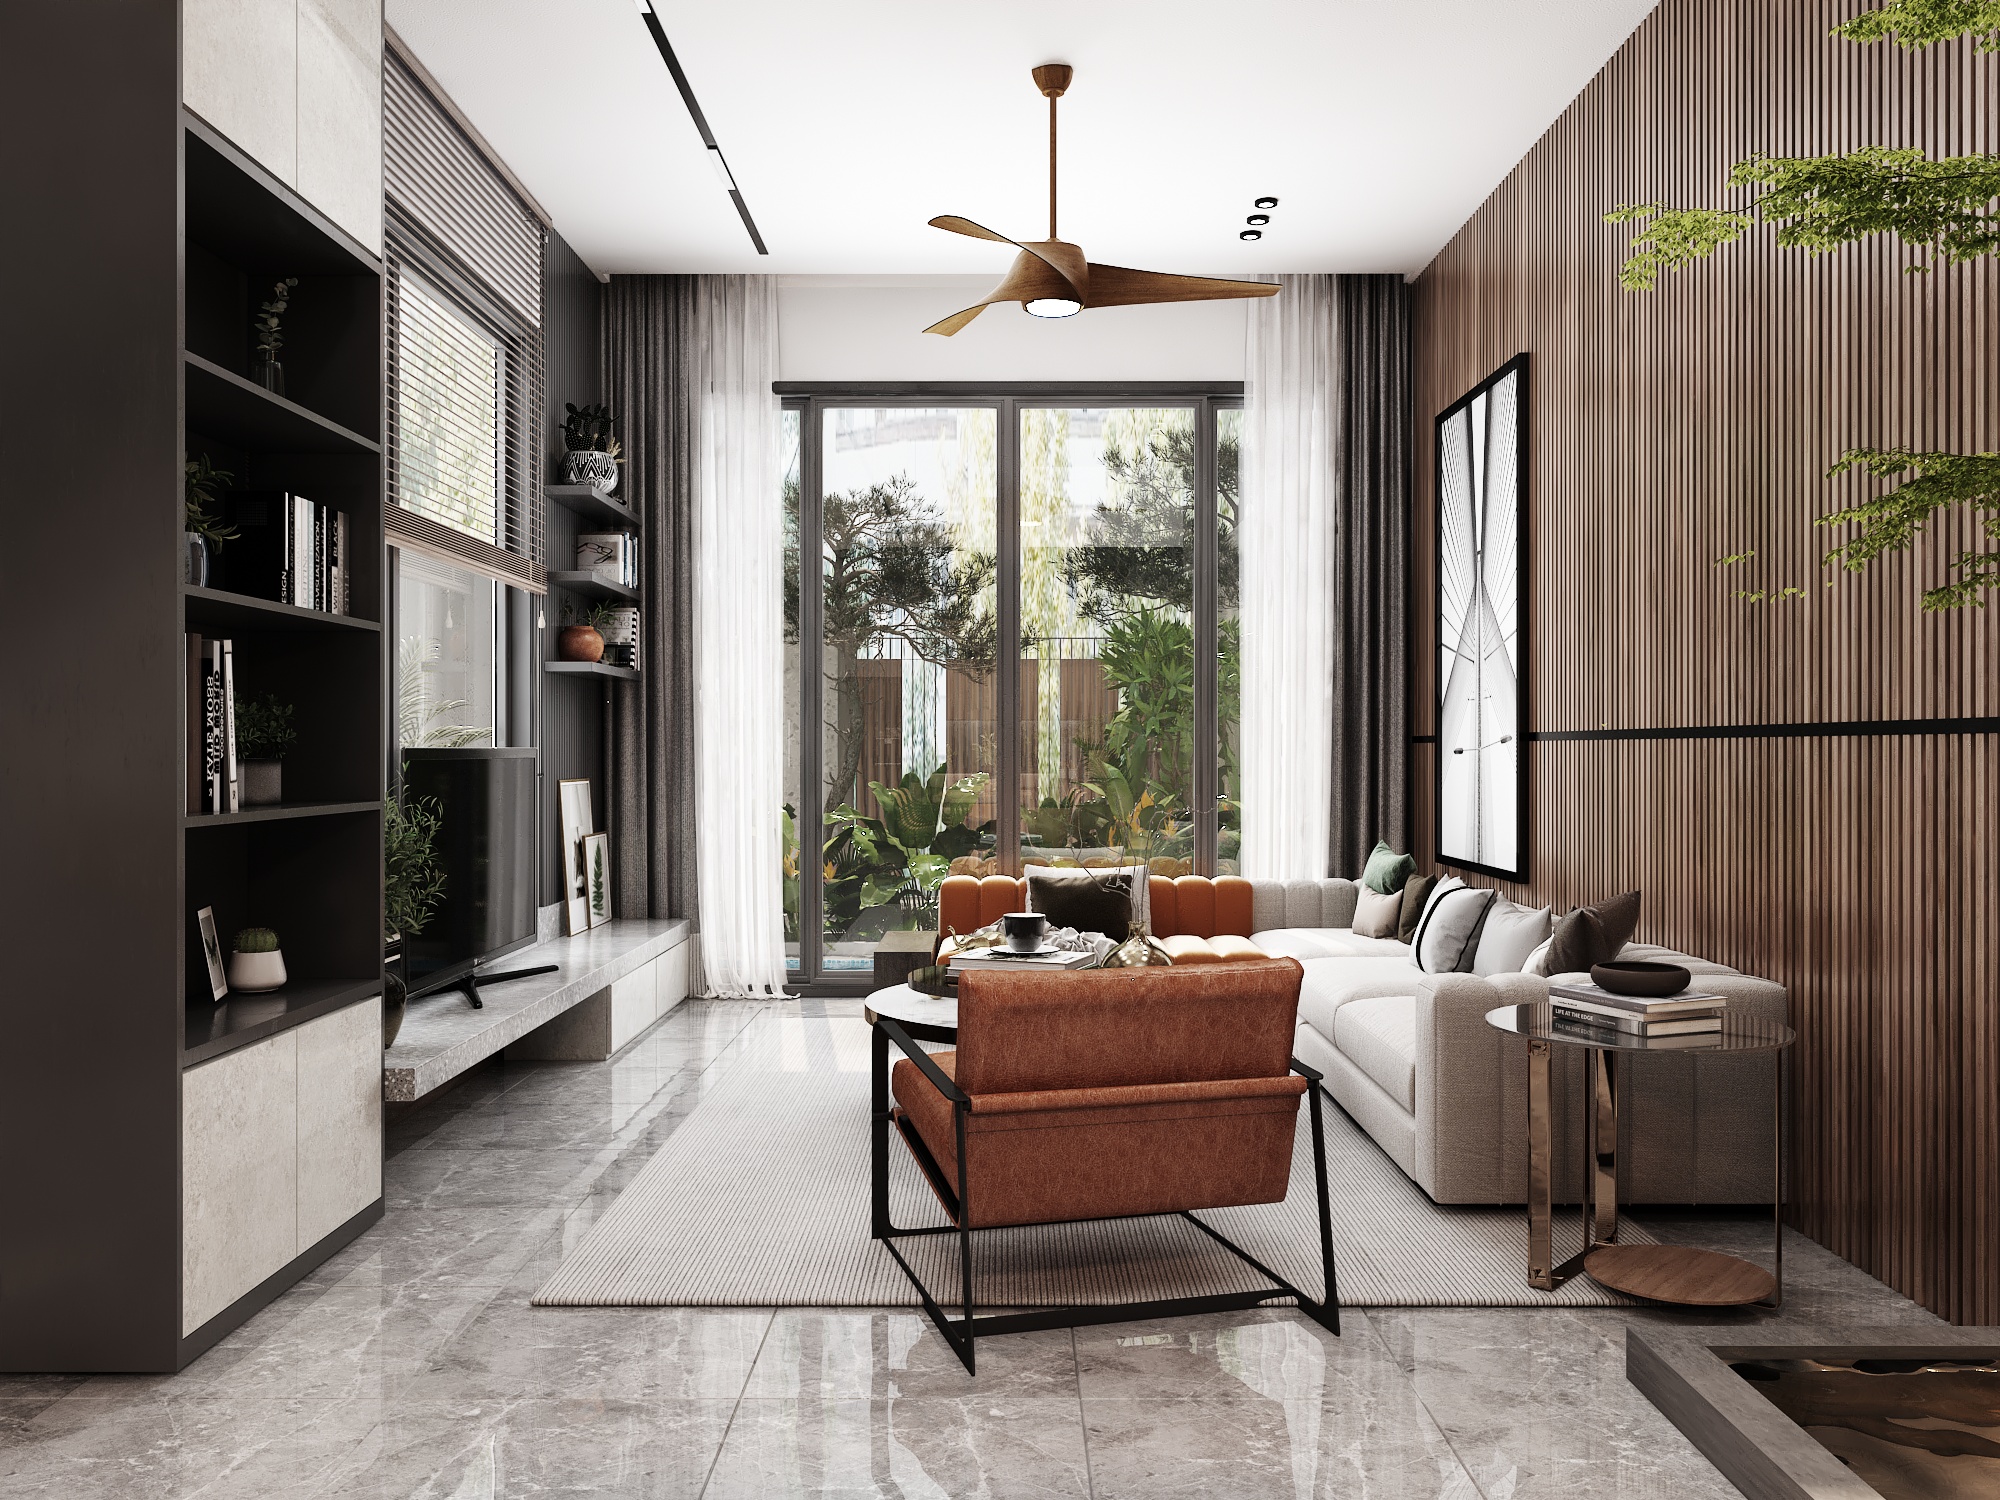 Thiết kế nội thất Biệt Thự tại Đồng Nai BIỆT THỰ ĐỒNG NAI 1628392758 3